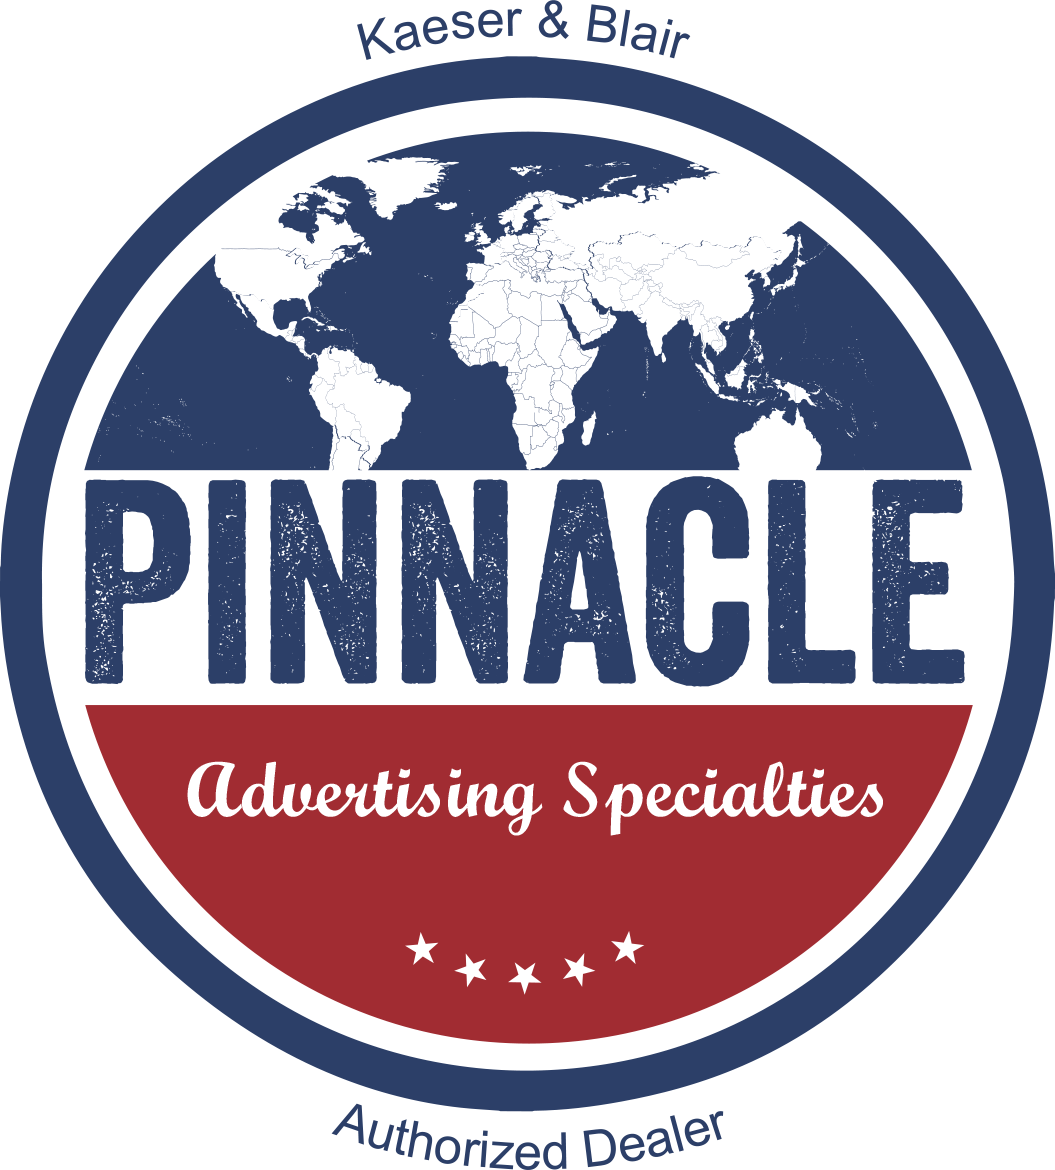 Pinnacle Advertising Specialities